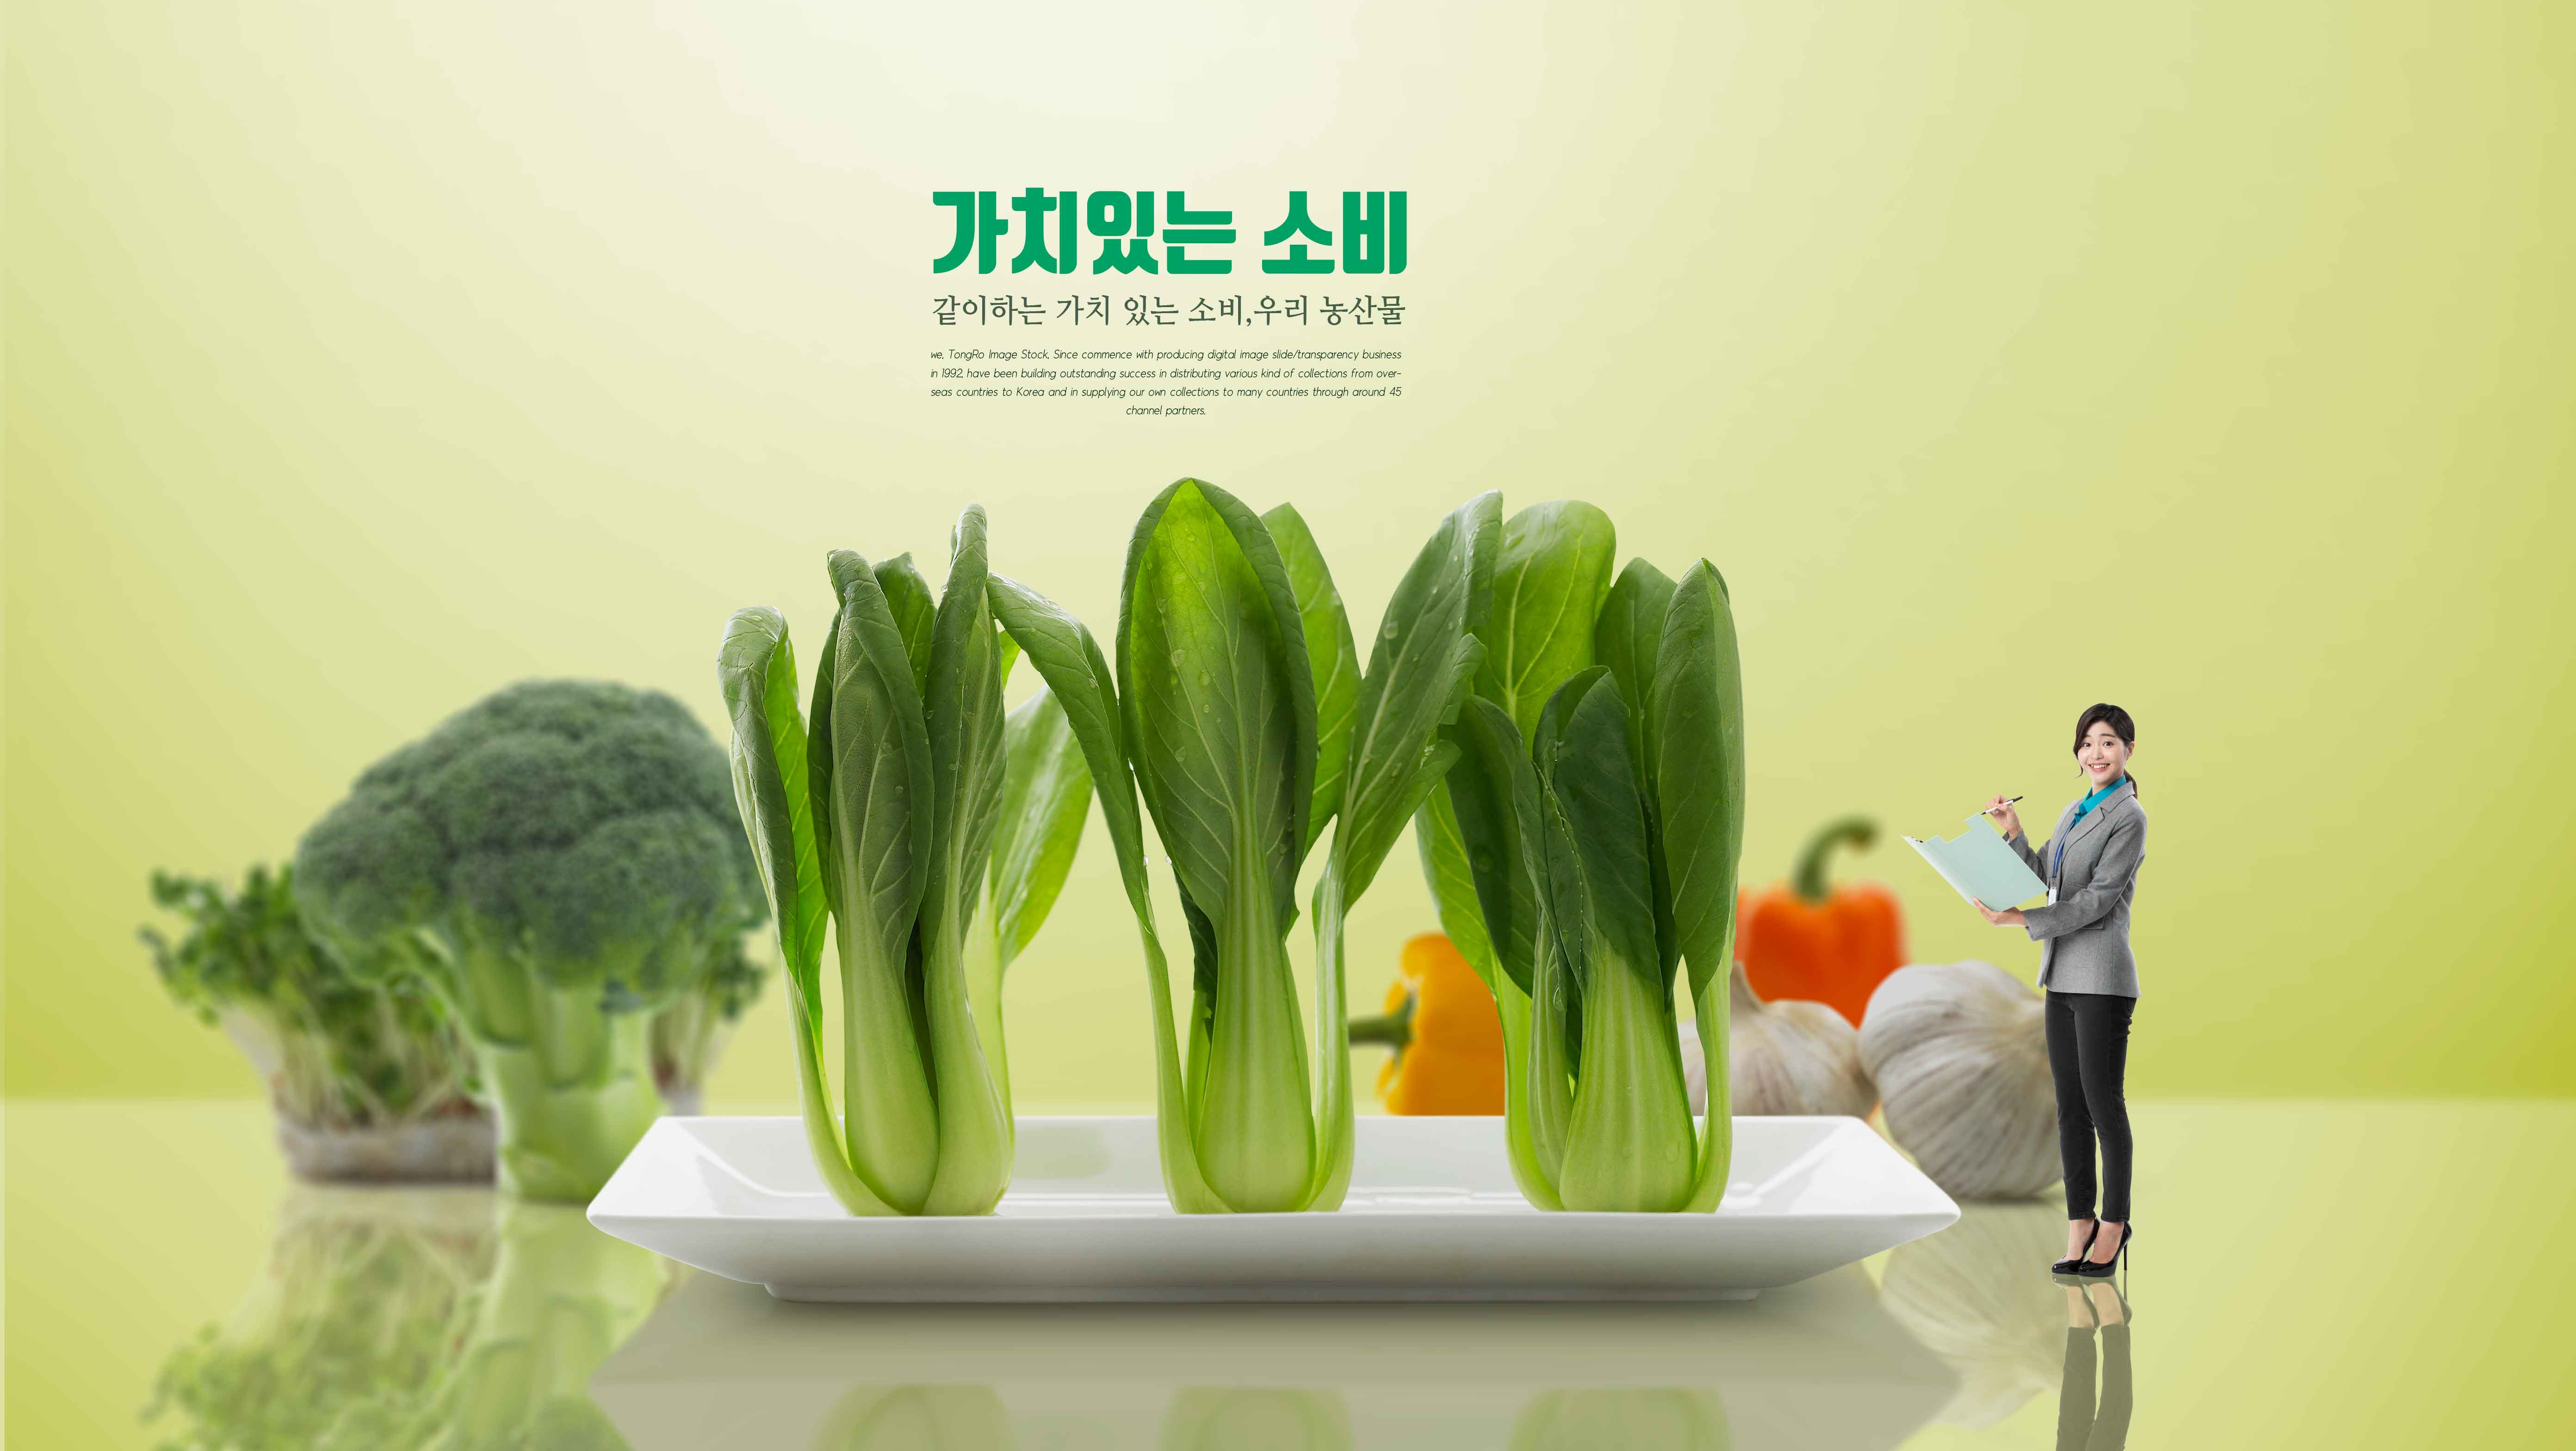 健康绿色蔬菜农产品海报设计psd素材设计素材模板